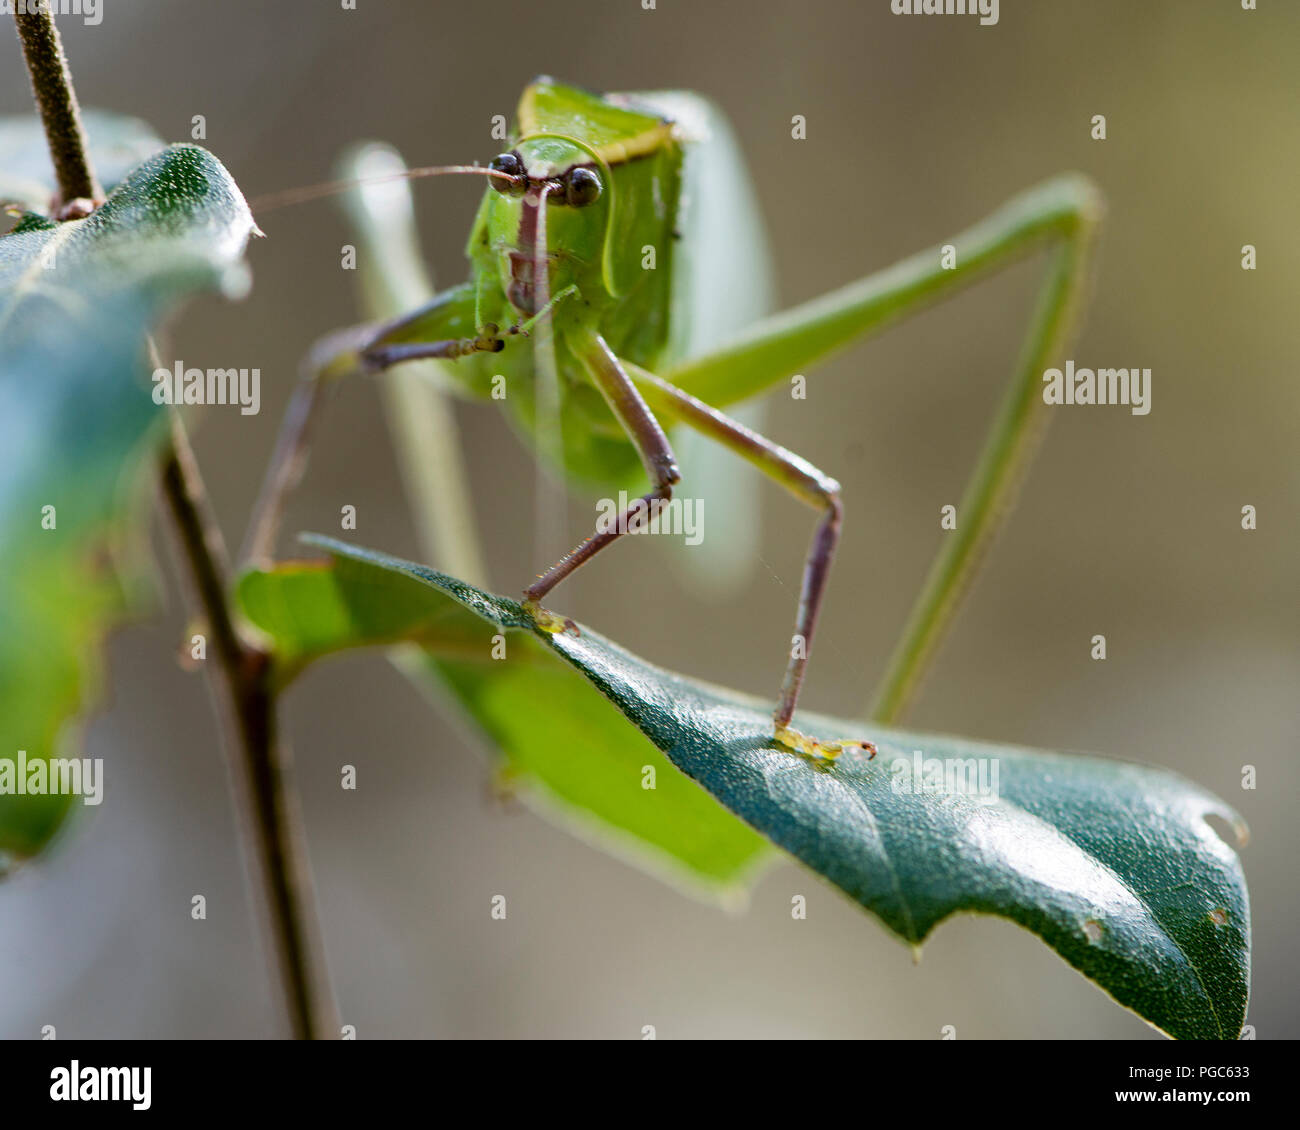 Katydid insetto su un ramo verde con un camuffamento visualizzando il suo colore verde, le antenne e gli occhi, nel suo ambiente e dintorni. Foto. Immagine. Foto Stock